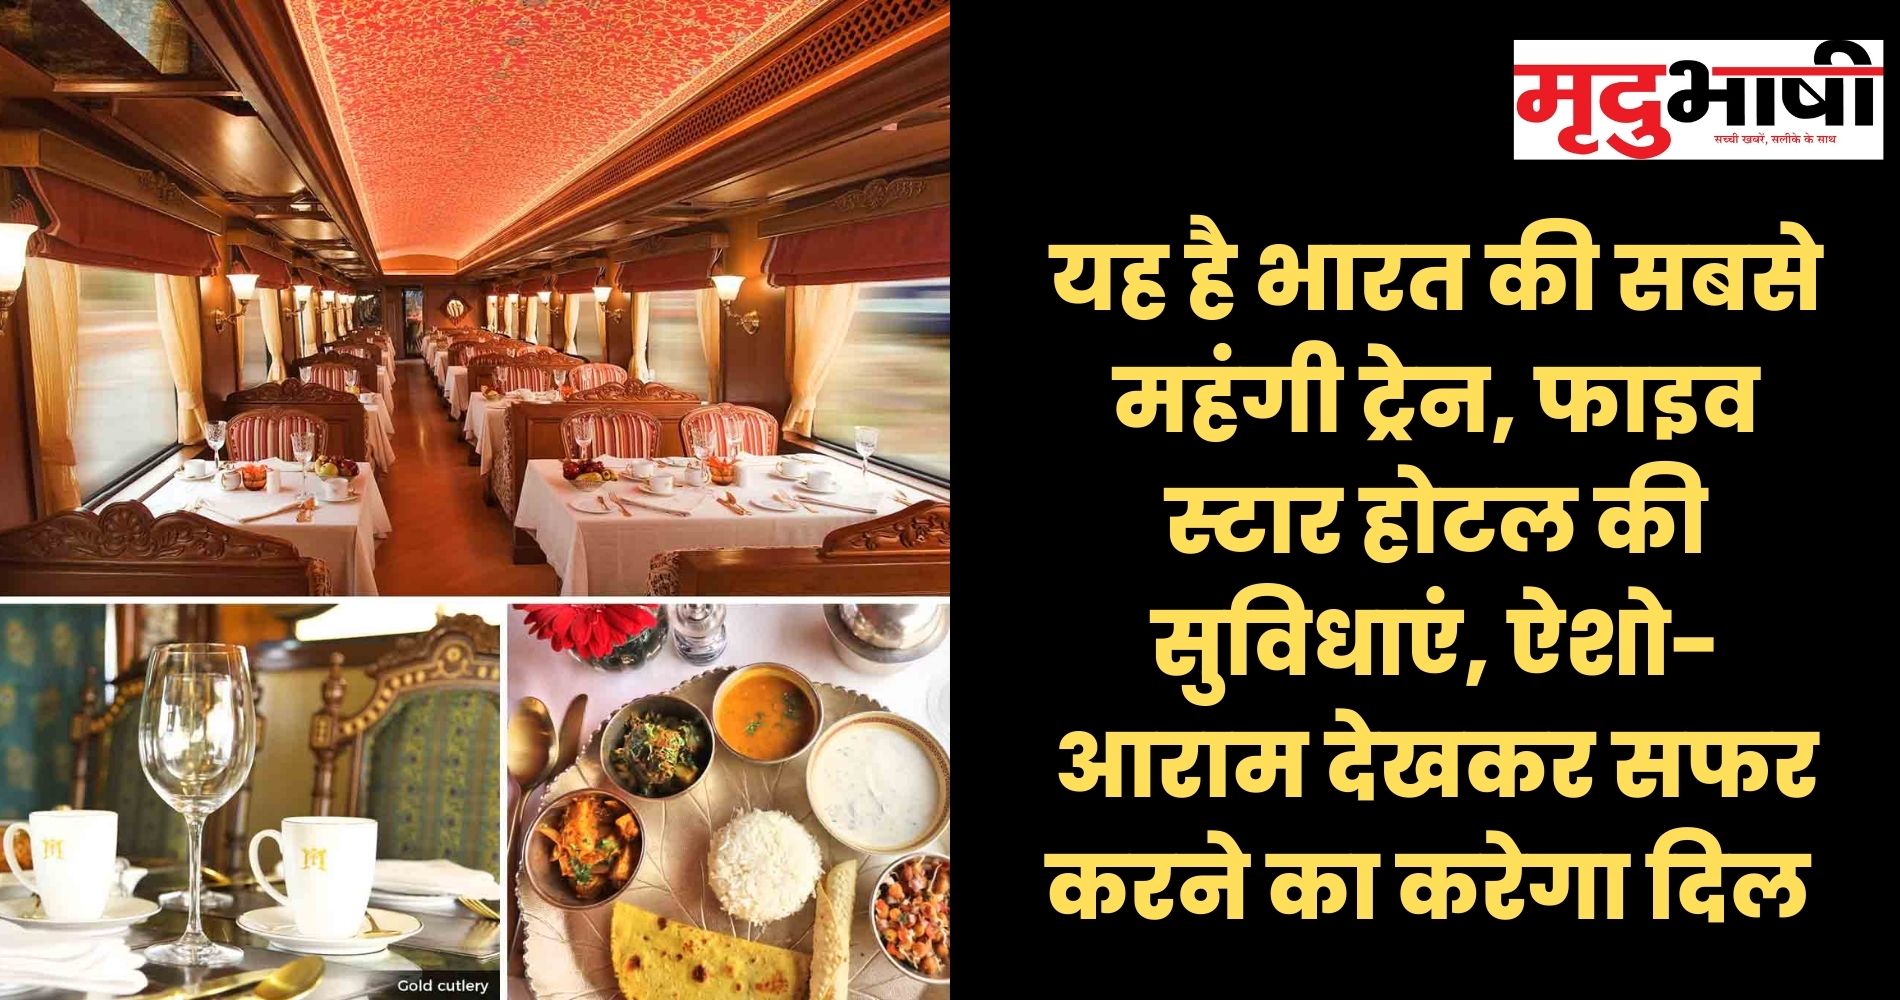 यह है भारत की सबसे महंगी ट्रेन, फाइव स्टार होटल की सुविधाएं, ऐशो-आराम देखकर सफर करने का करेगा दिल